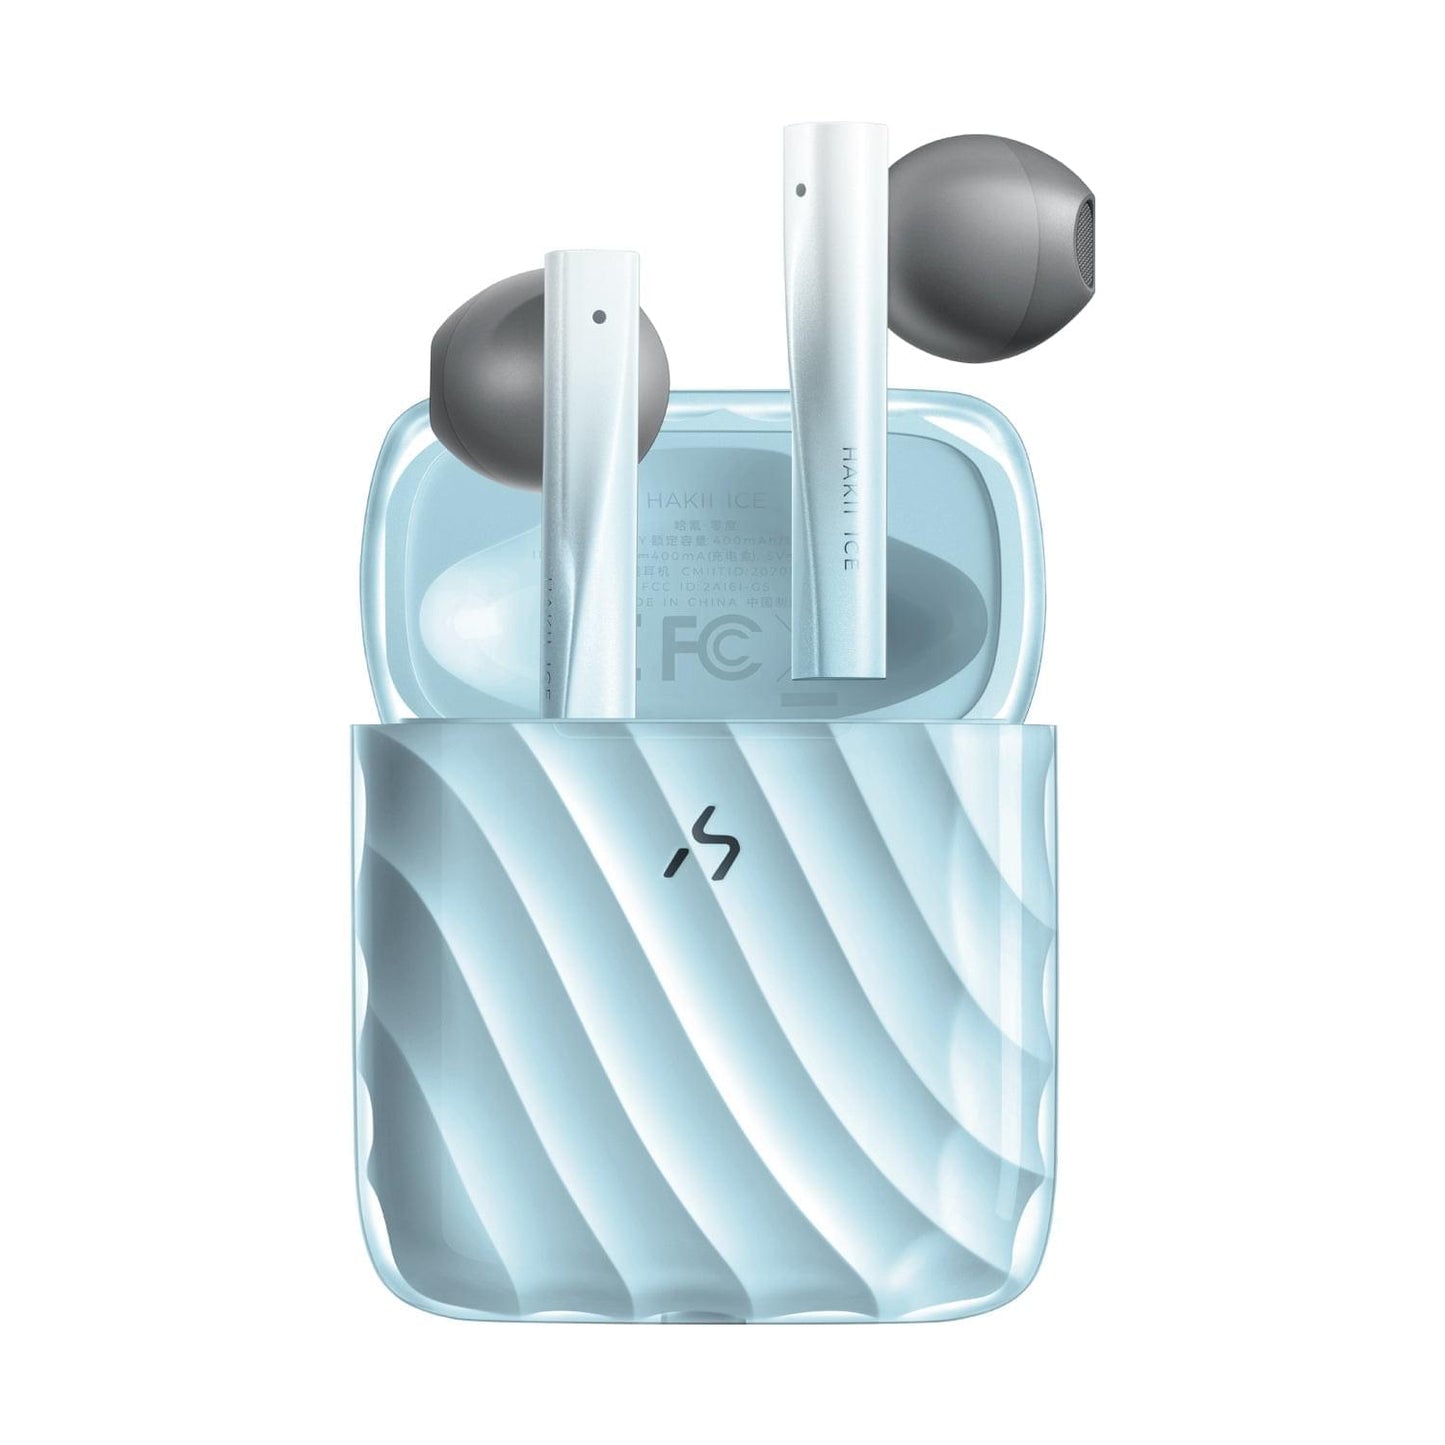 HAKII ICE Auriculares inalámbricos de baja latencia para Android y iPhone (Azul)